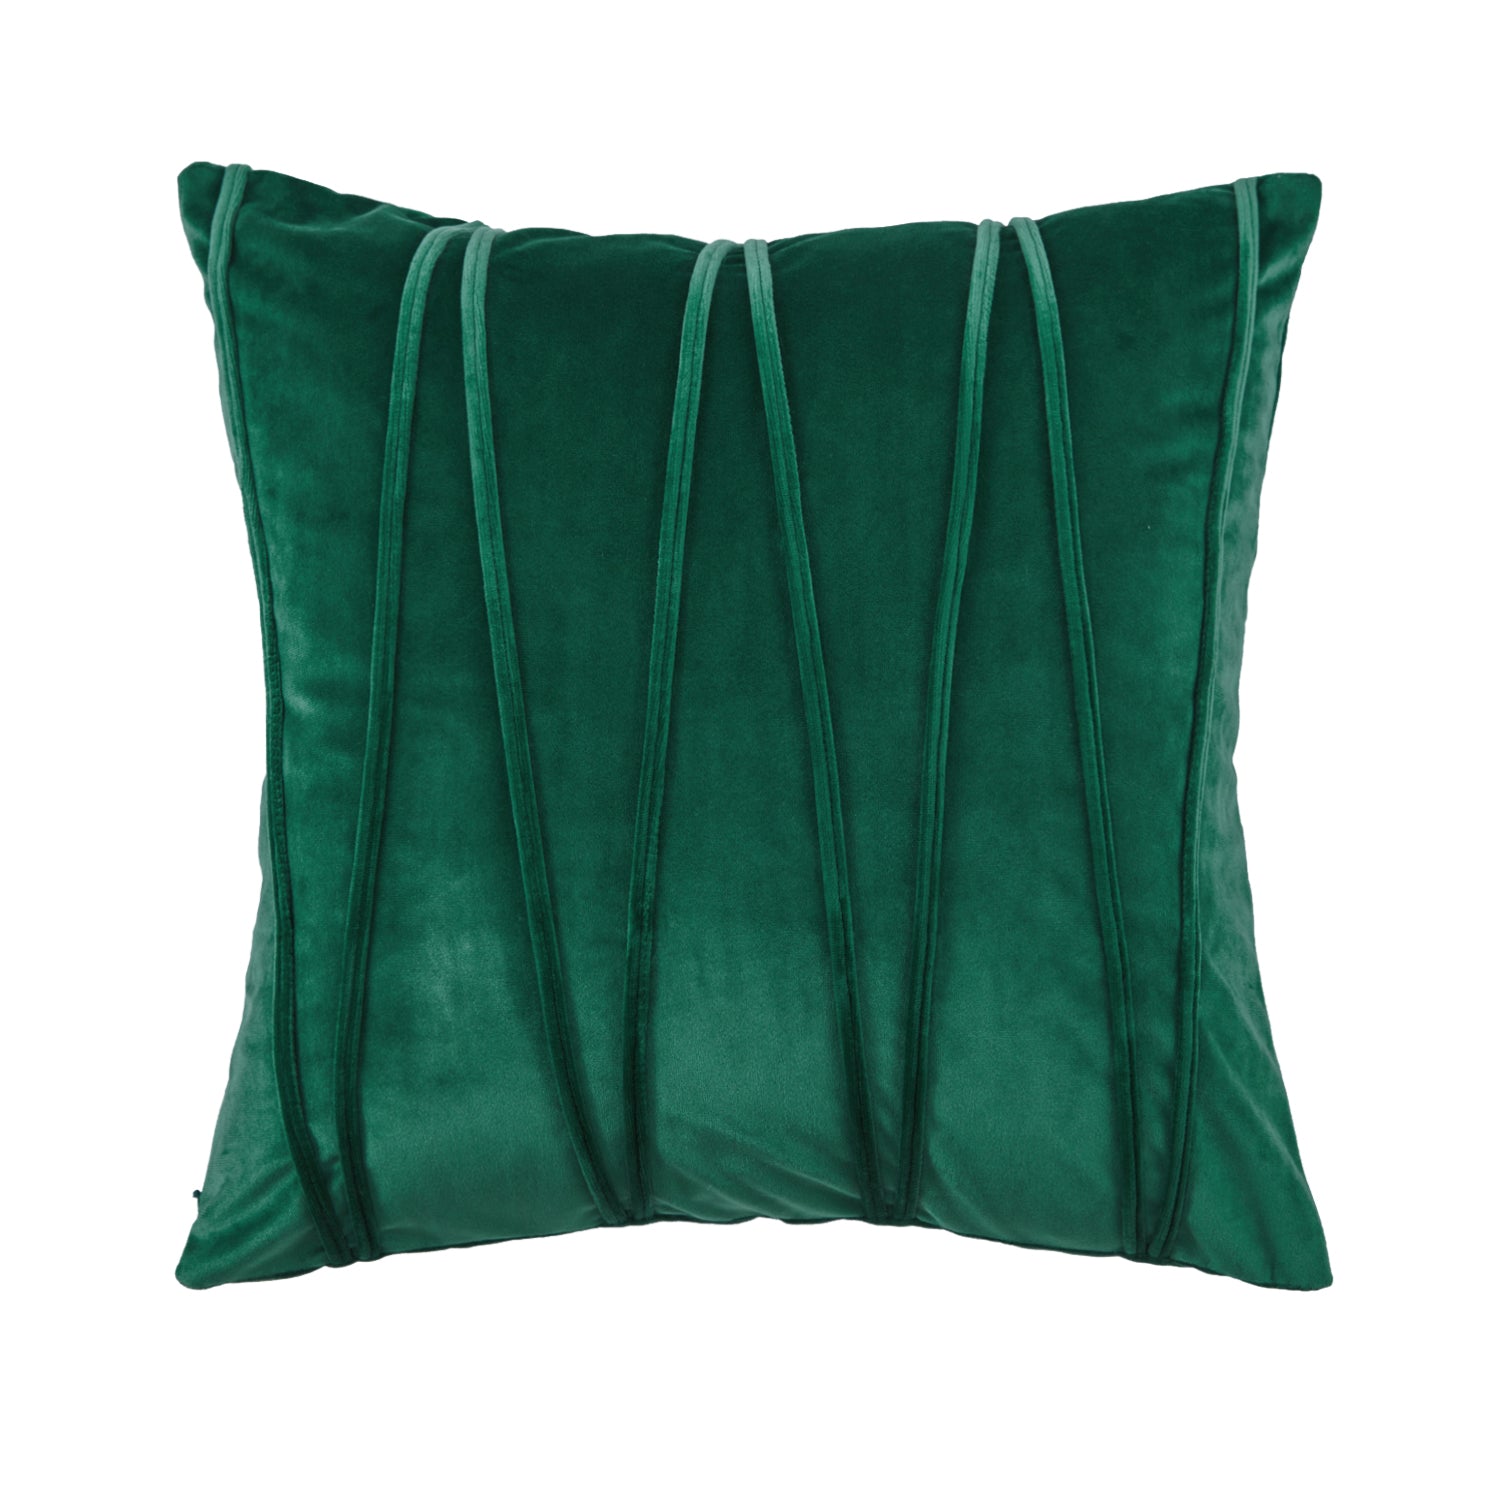 Hand-Made Boho Square Soft Velvet Pillow Cover